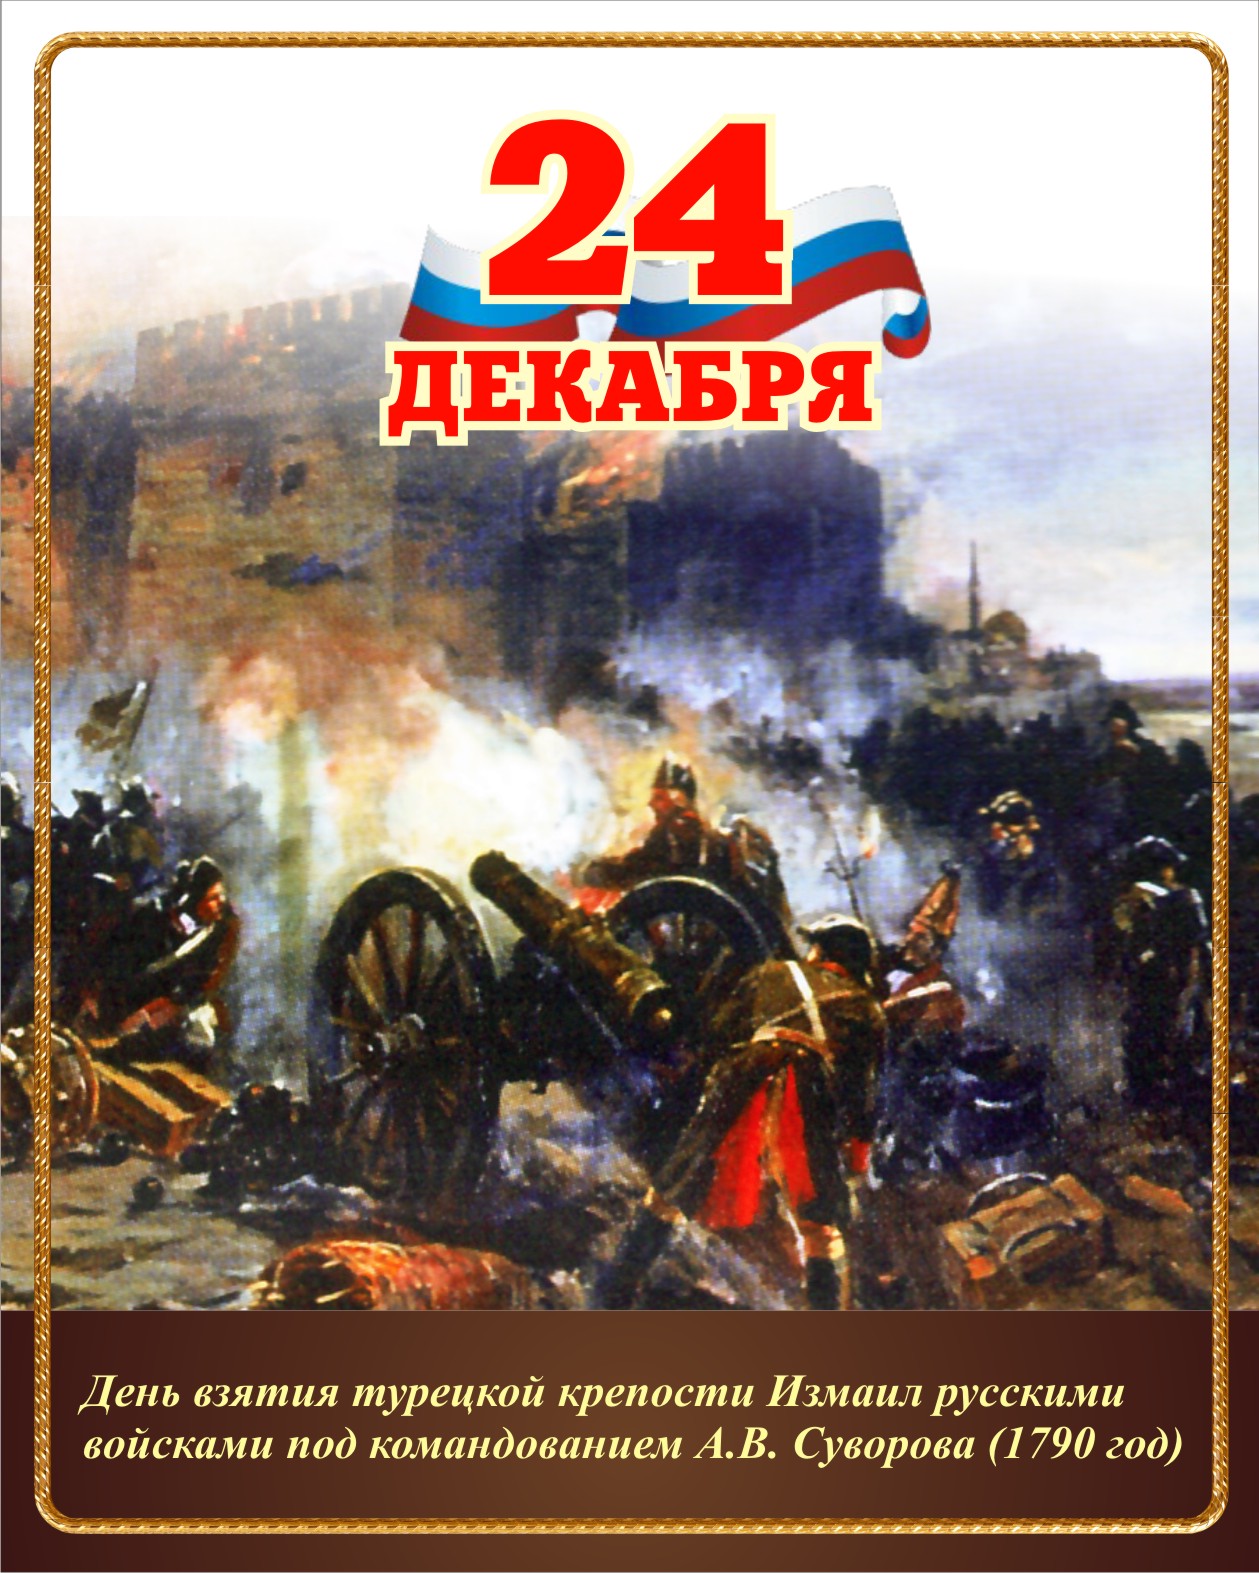 День воинской славы россии декабрь